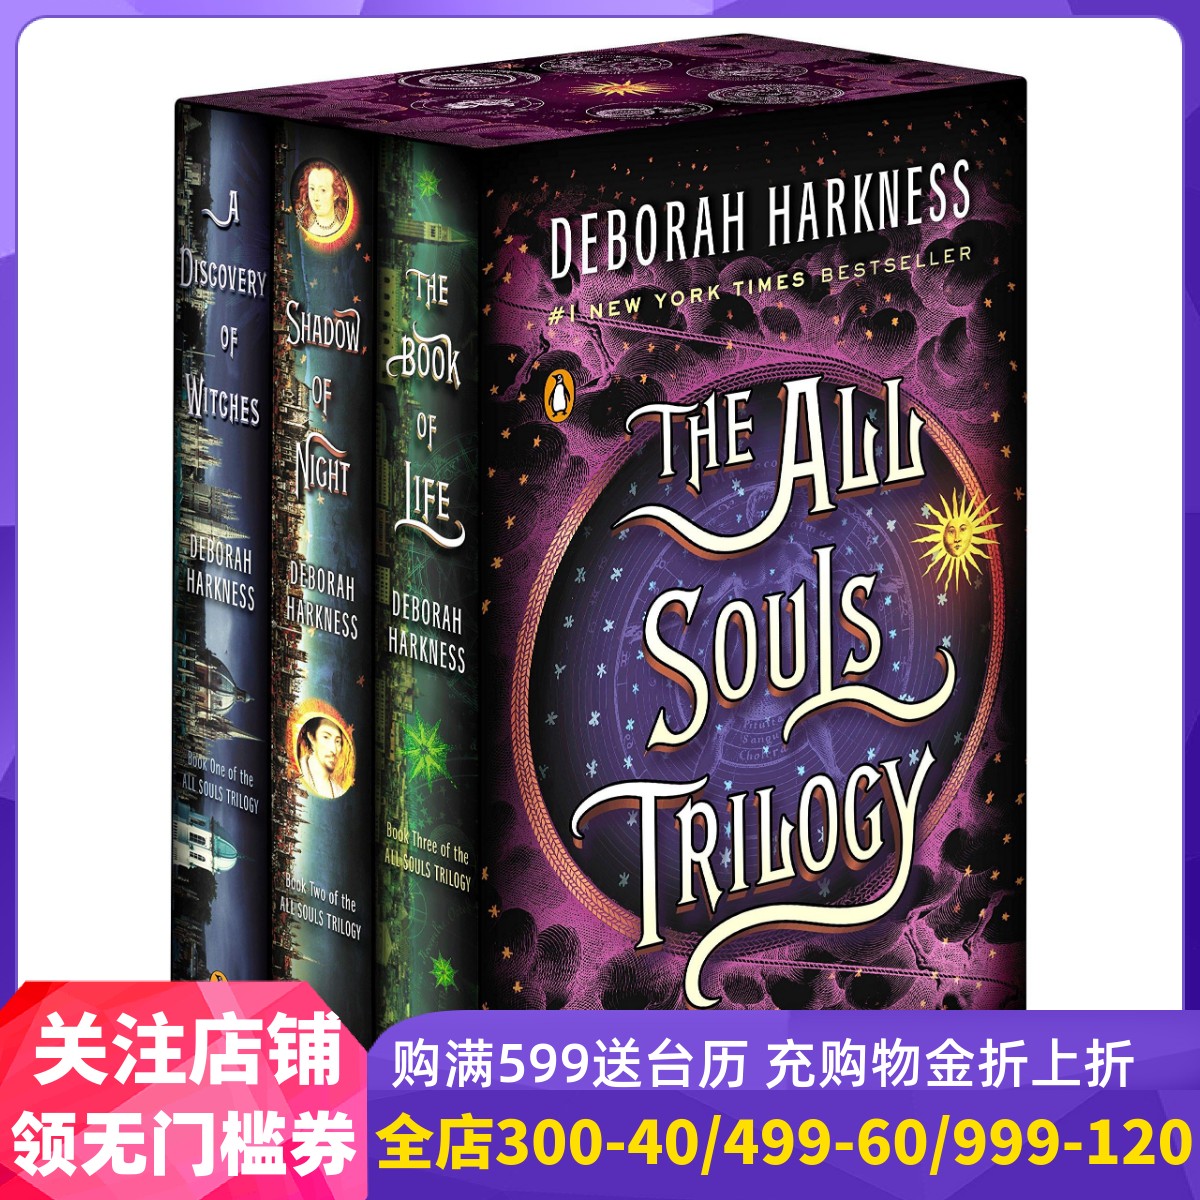 英文原版 发现女巫三部曲套装 魔法觉醒 英剧原著 马修古迪主演 The All Souls Trilogy Boxed Set (A Discovery of Witches)